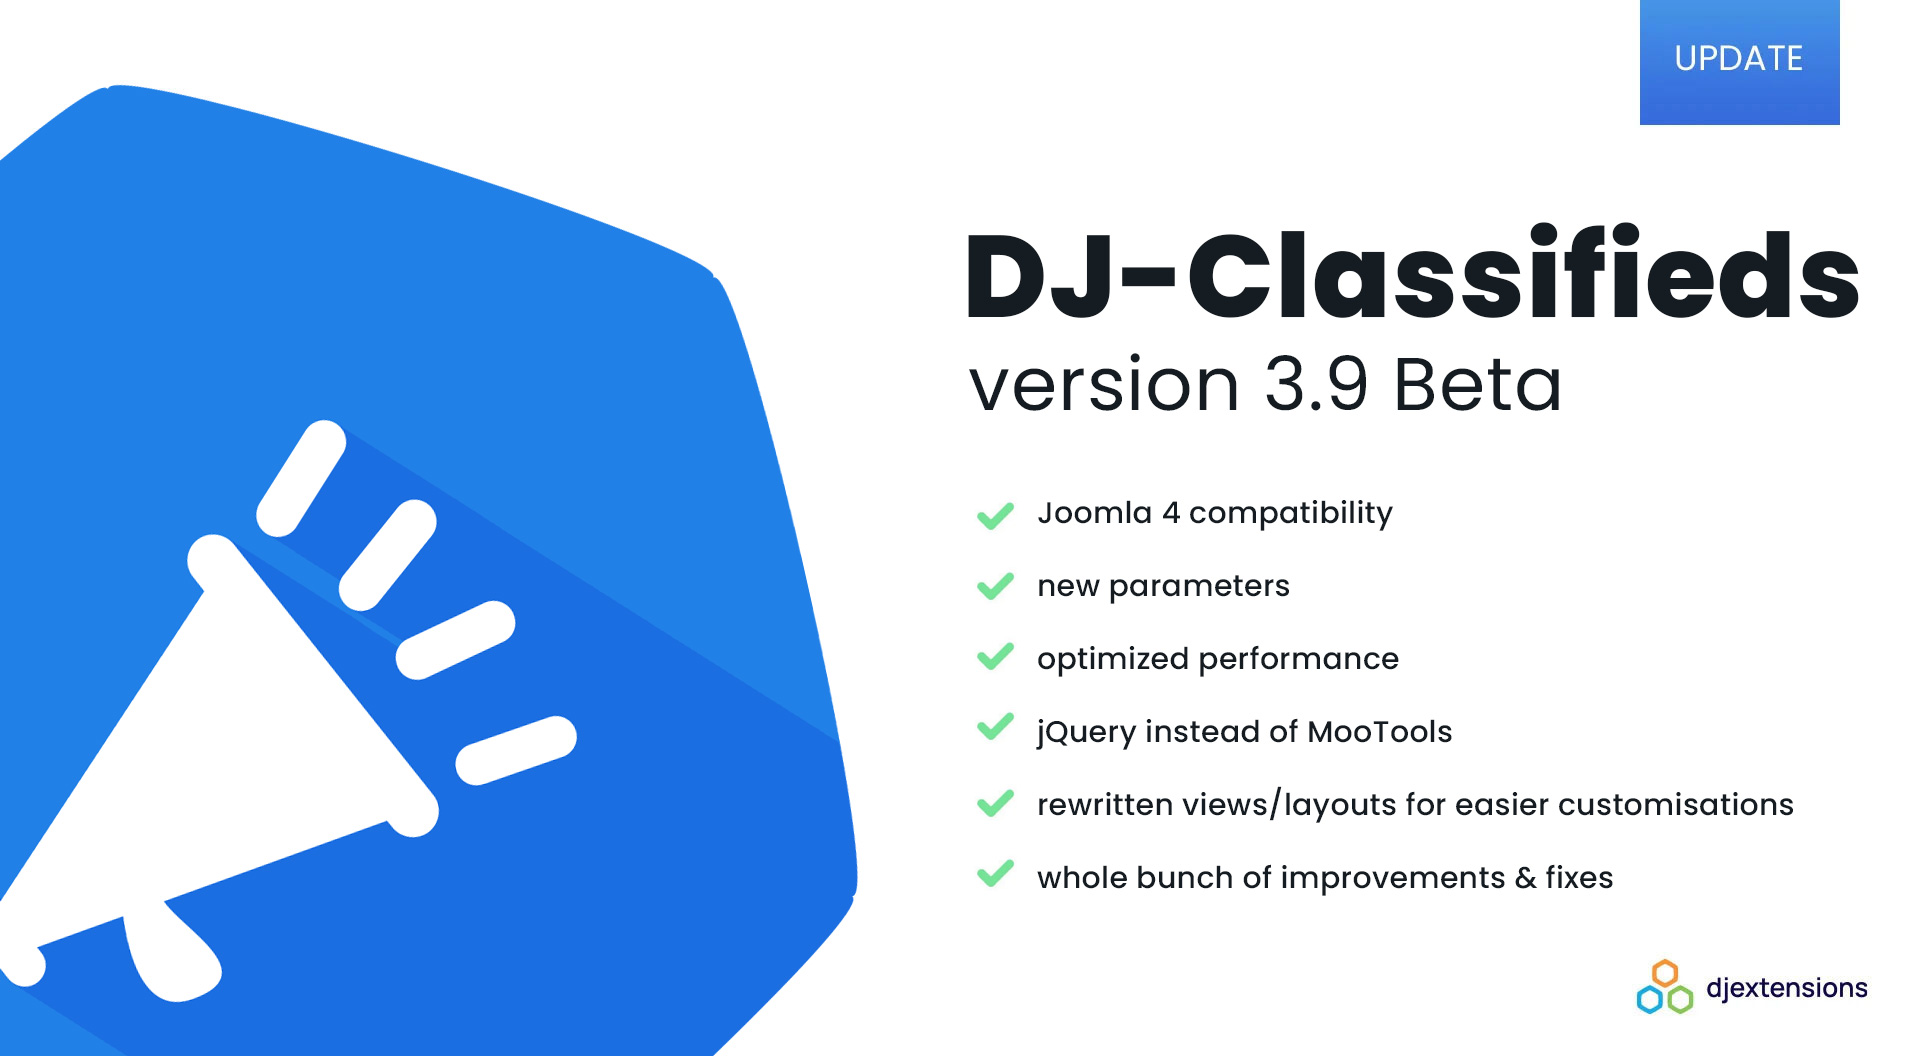 DJ-Classifieds version 3.9 beta